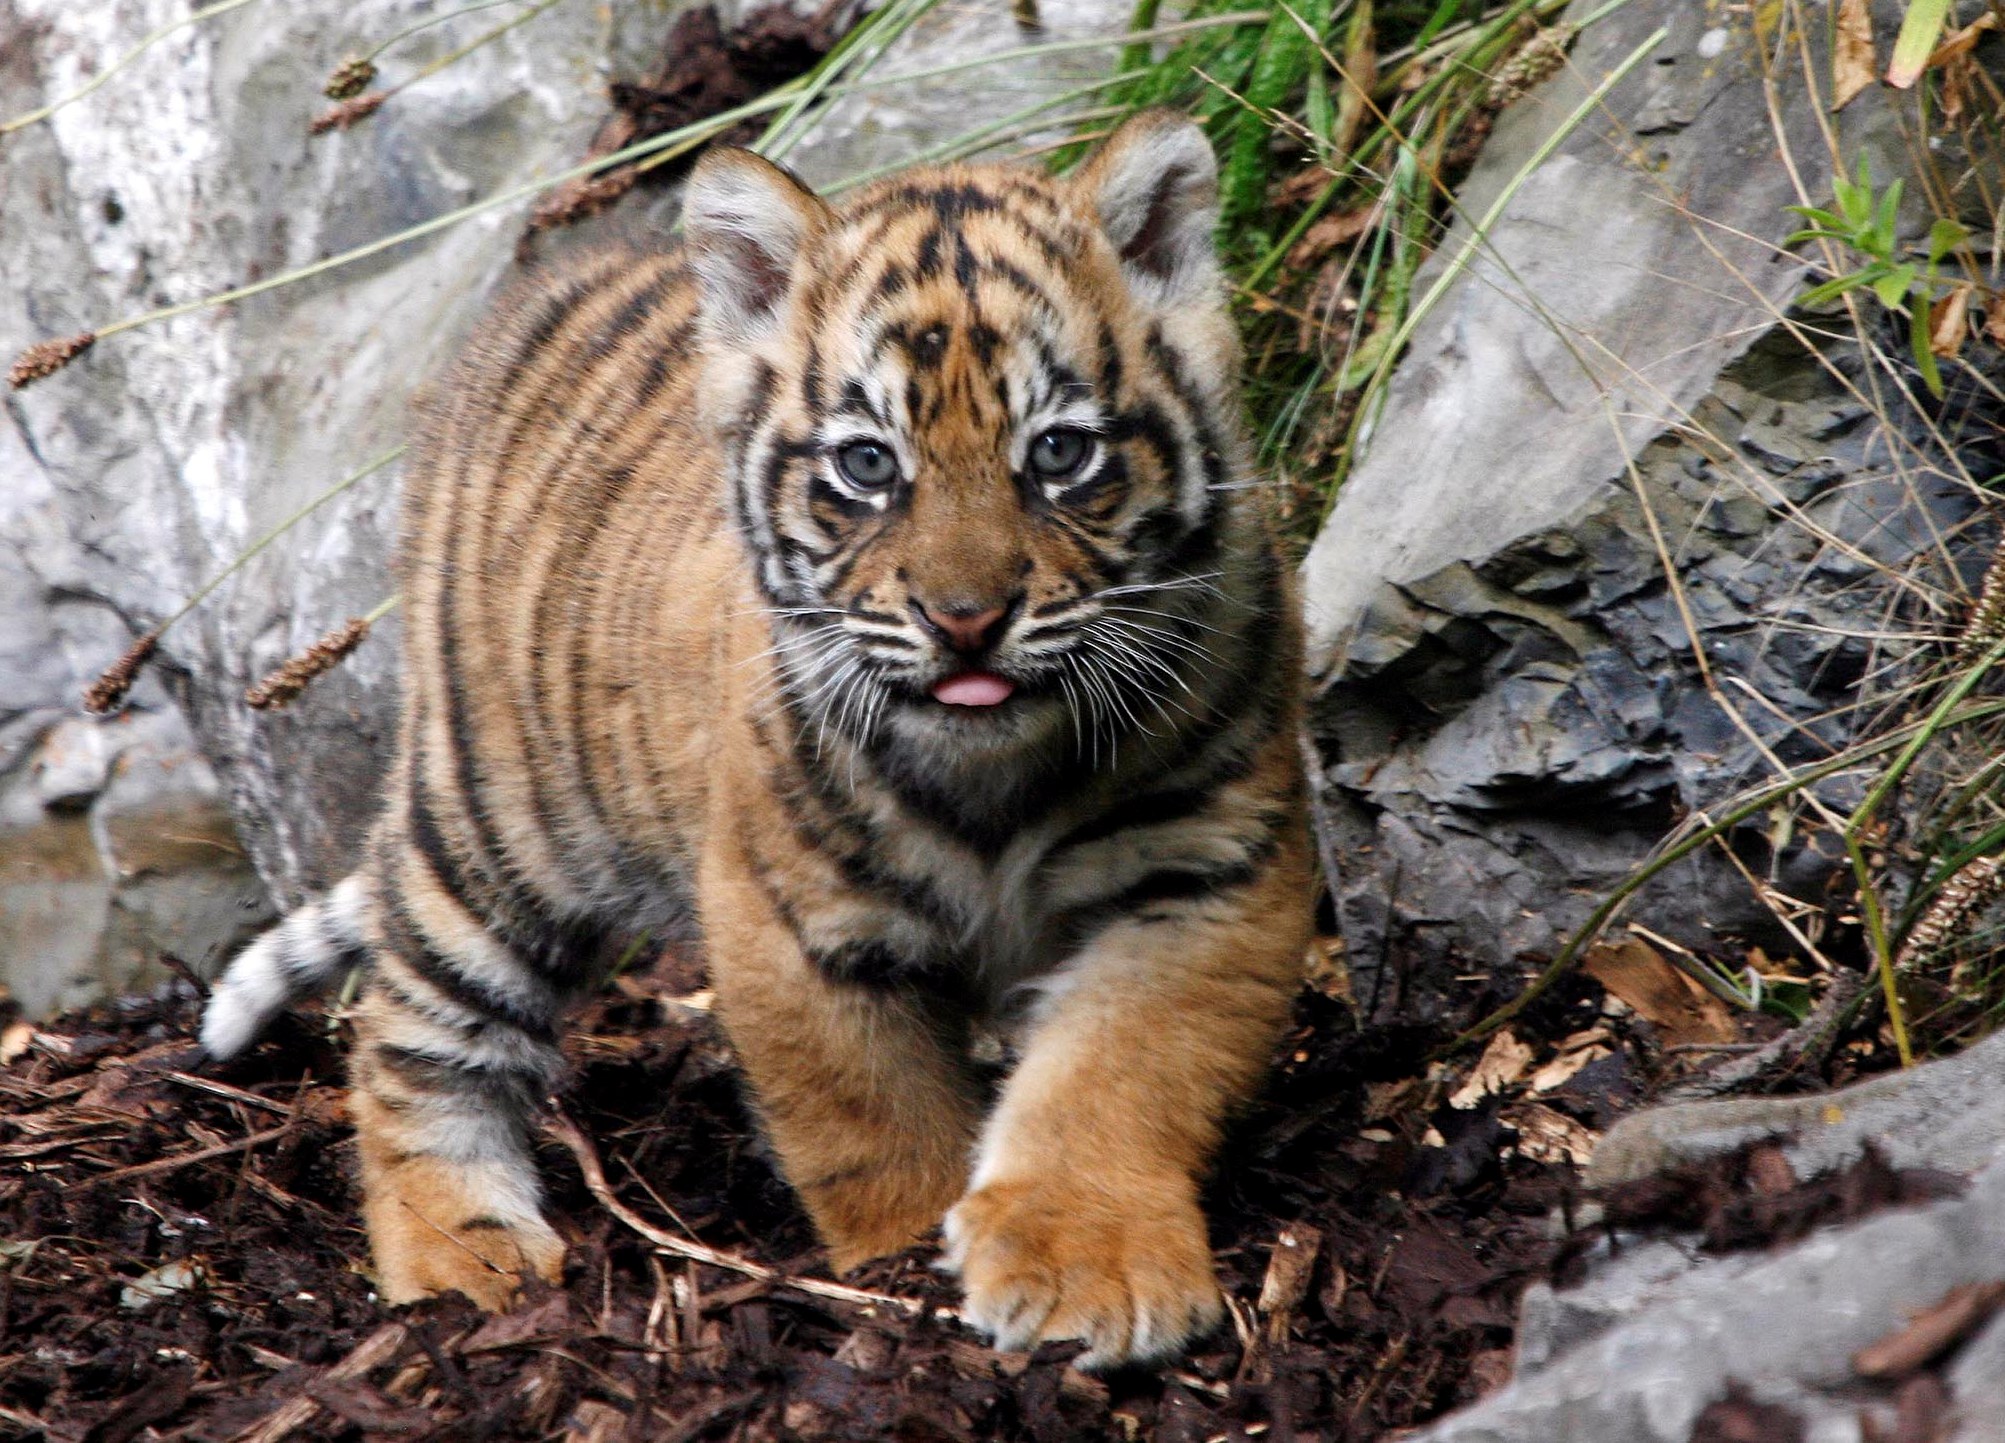 tiger pics dowload desktop cute baby tiger pics. desktop cute baby tige...